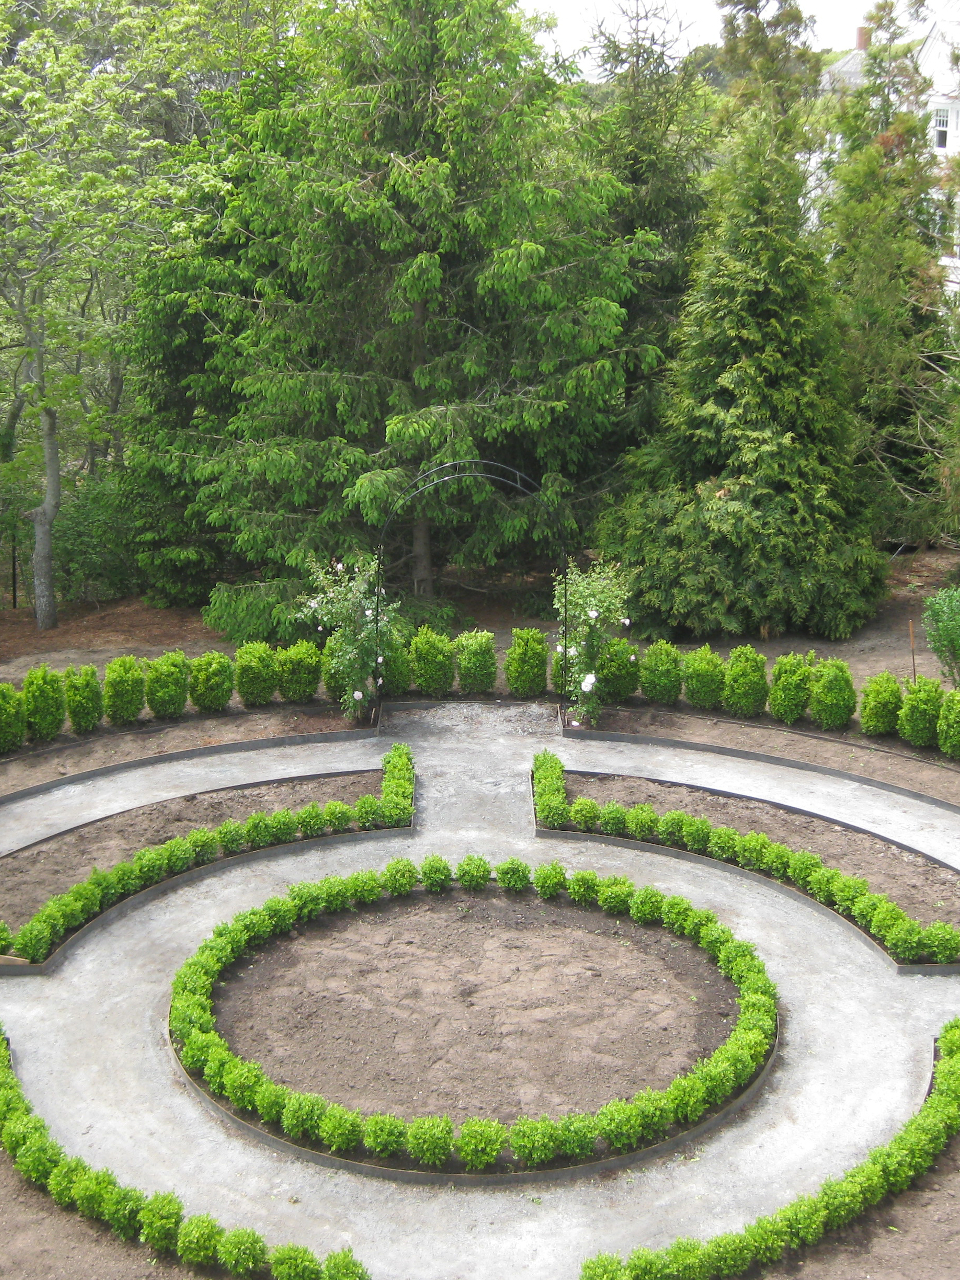 Partial completion of a circular rose garden